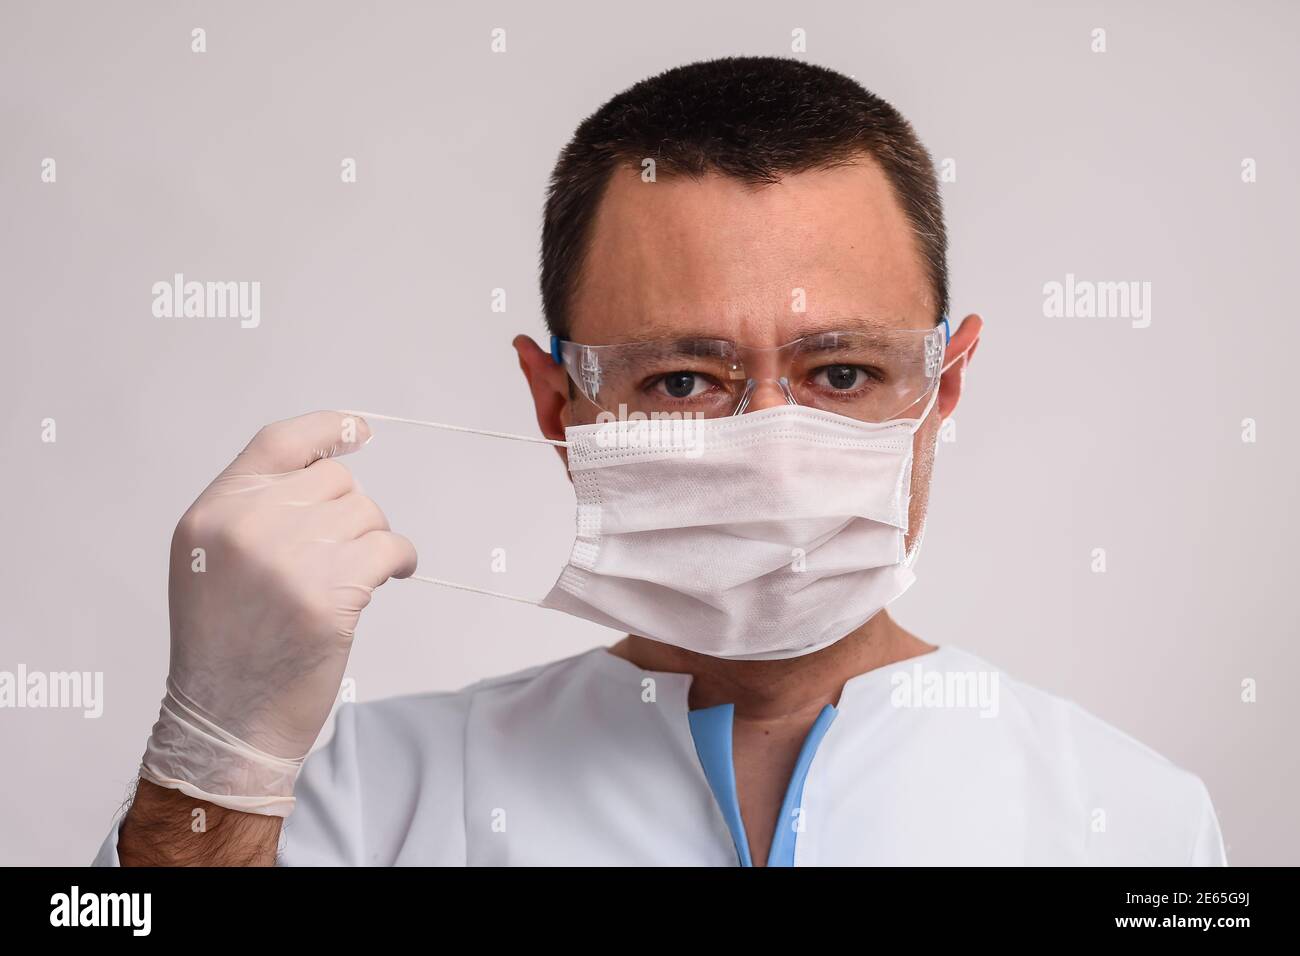 Médico profesional poniendo máscara protectora. COVID-19 medidas preventivas. Foto de stock